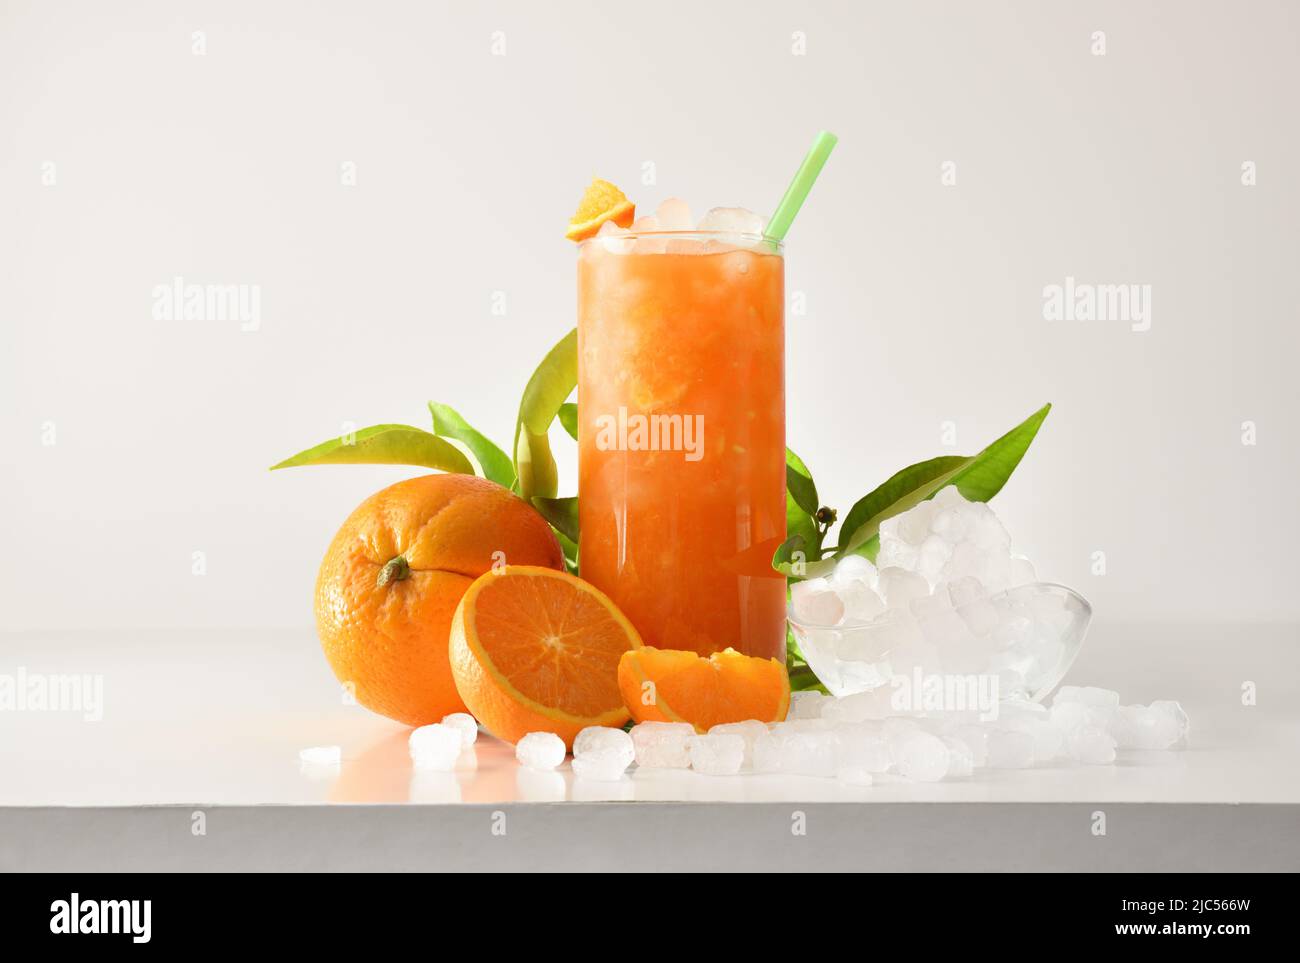 La slushie orange dans un grand verre avec des fruits et de la glace pilée autour de lui sur une table blanche avec un fond isolé. Vue avant. Composition horizontale. Banque D'Images